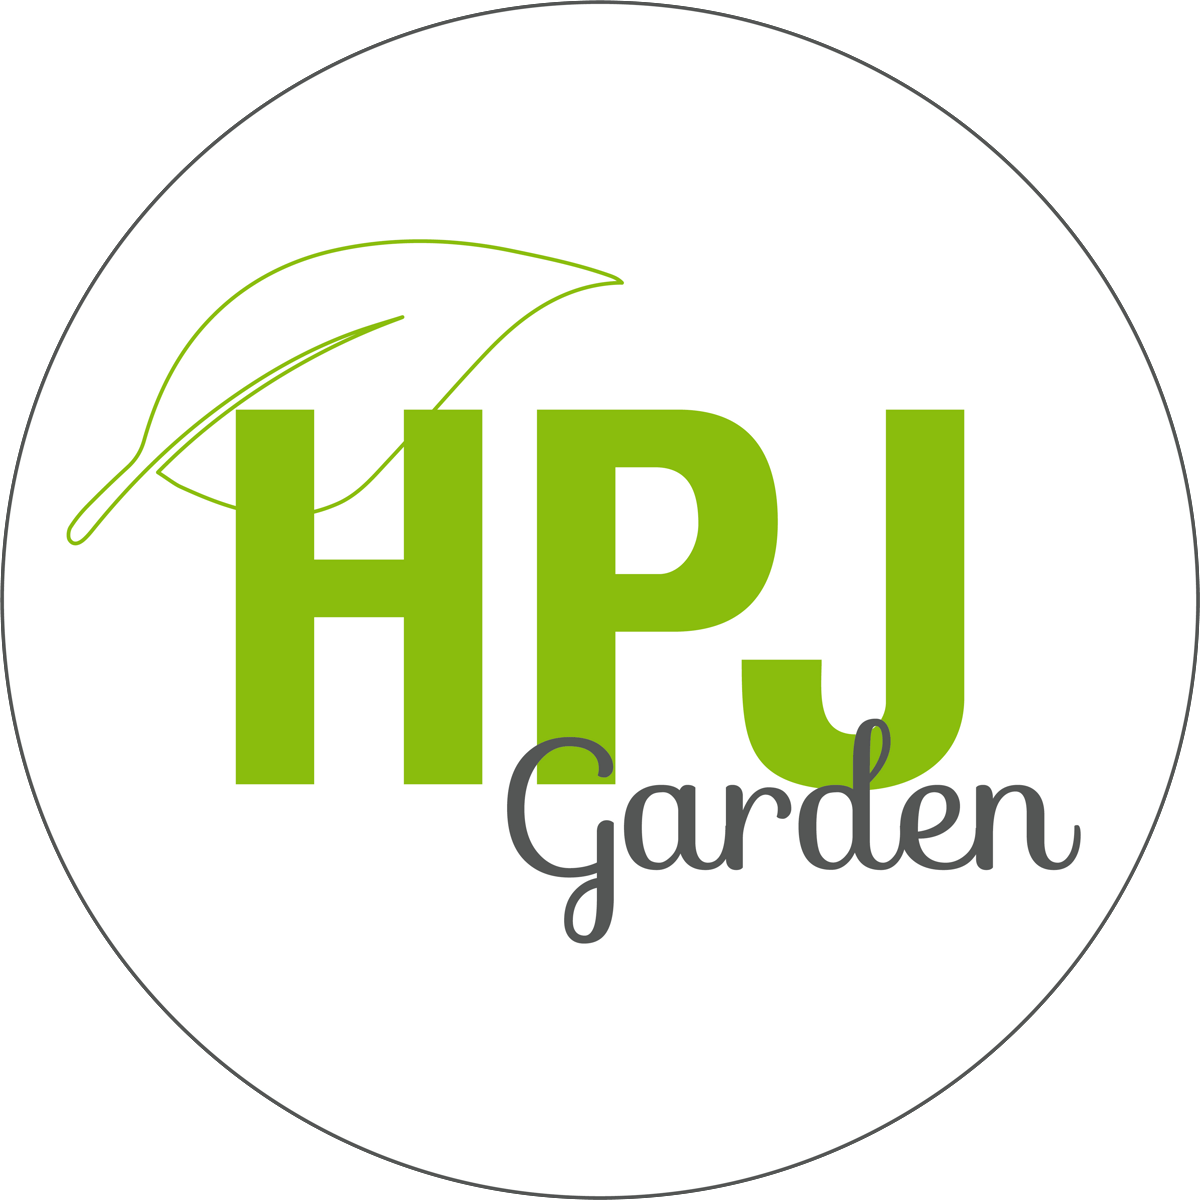 Hpj Garden Logotyp #1.png